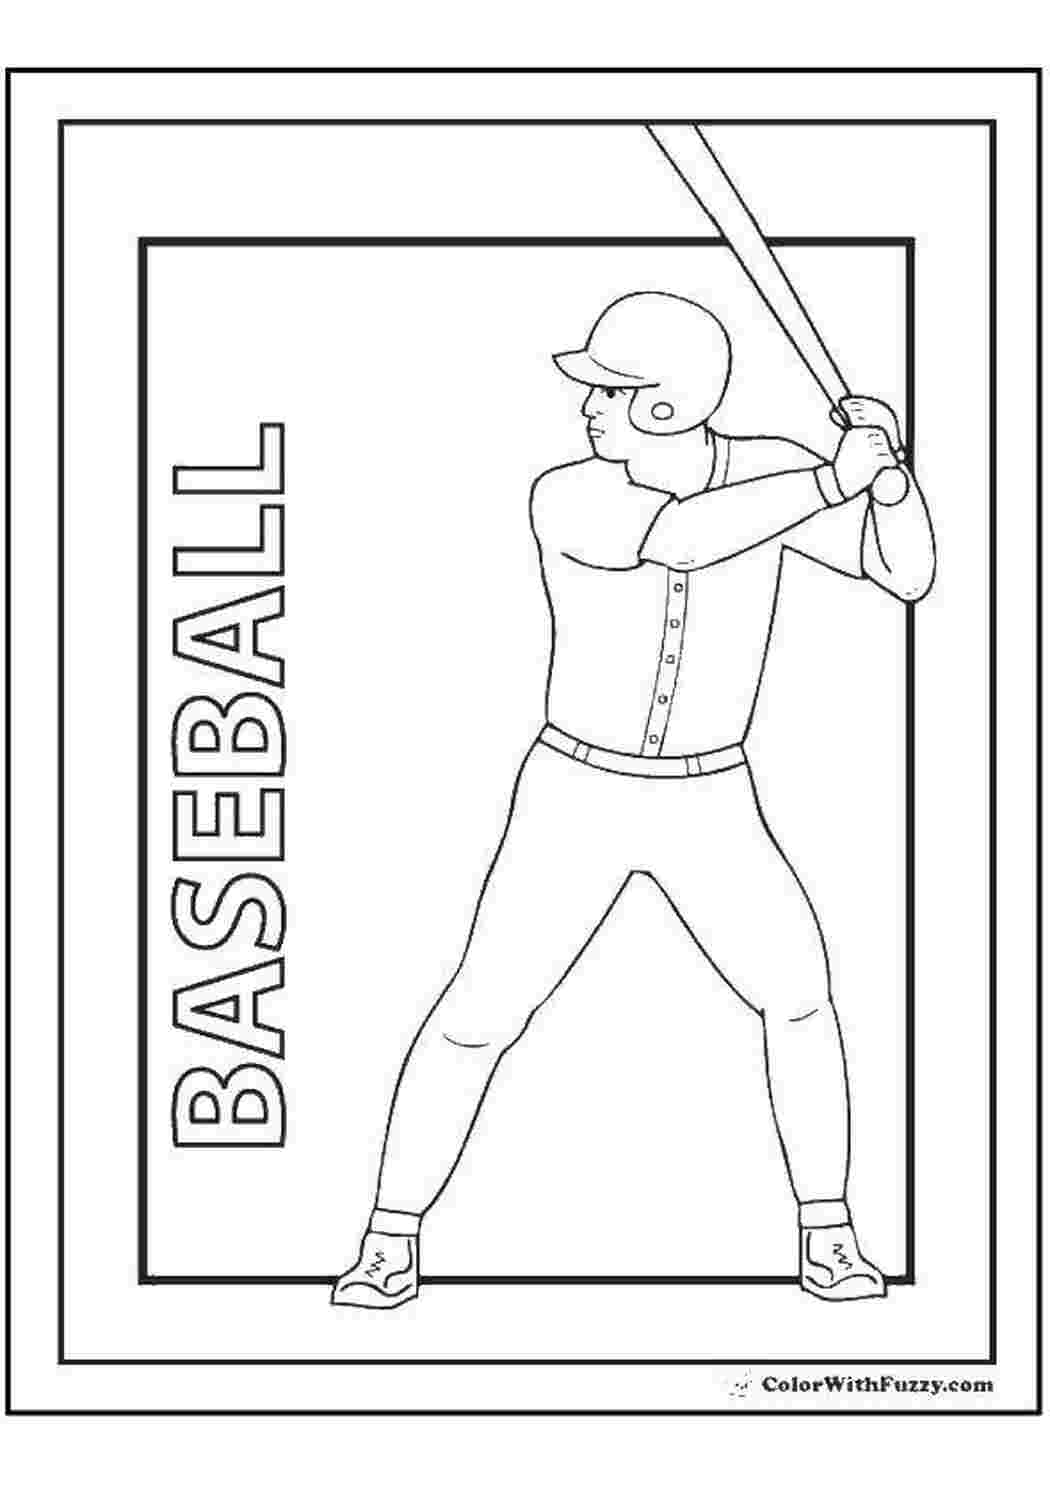 Раскраски Парень играет в бейсбол спорт парень, кепка, бита